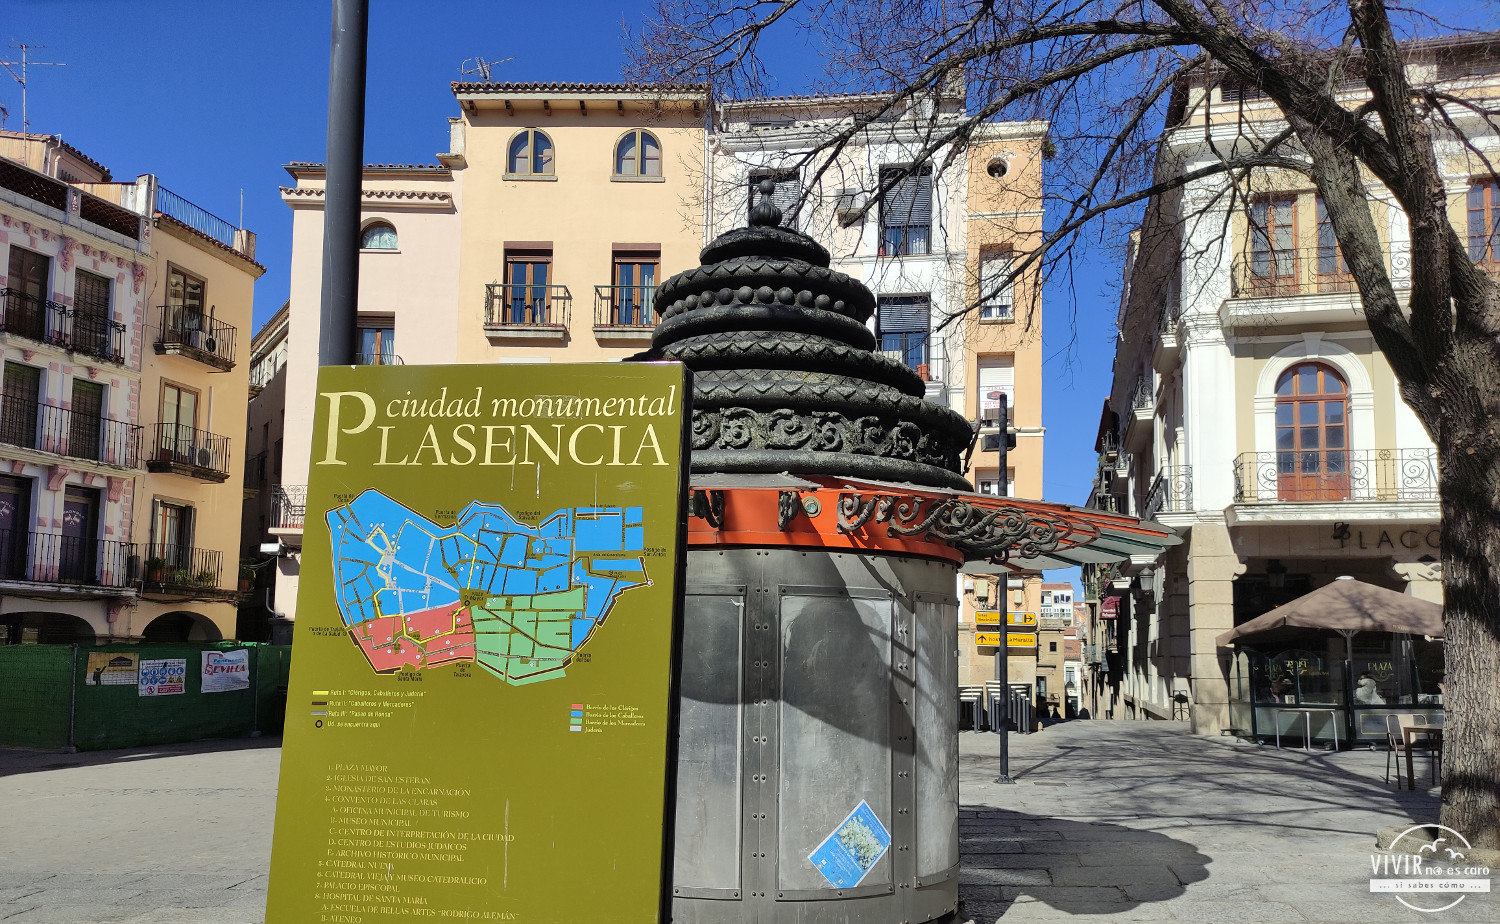 La Plaza Mayor de Plasencia